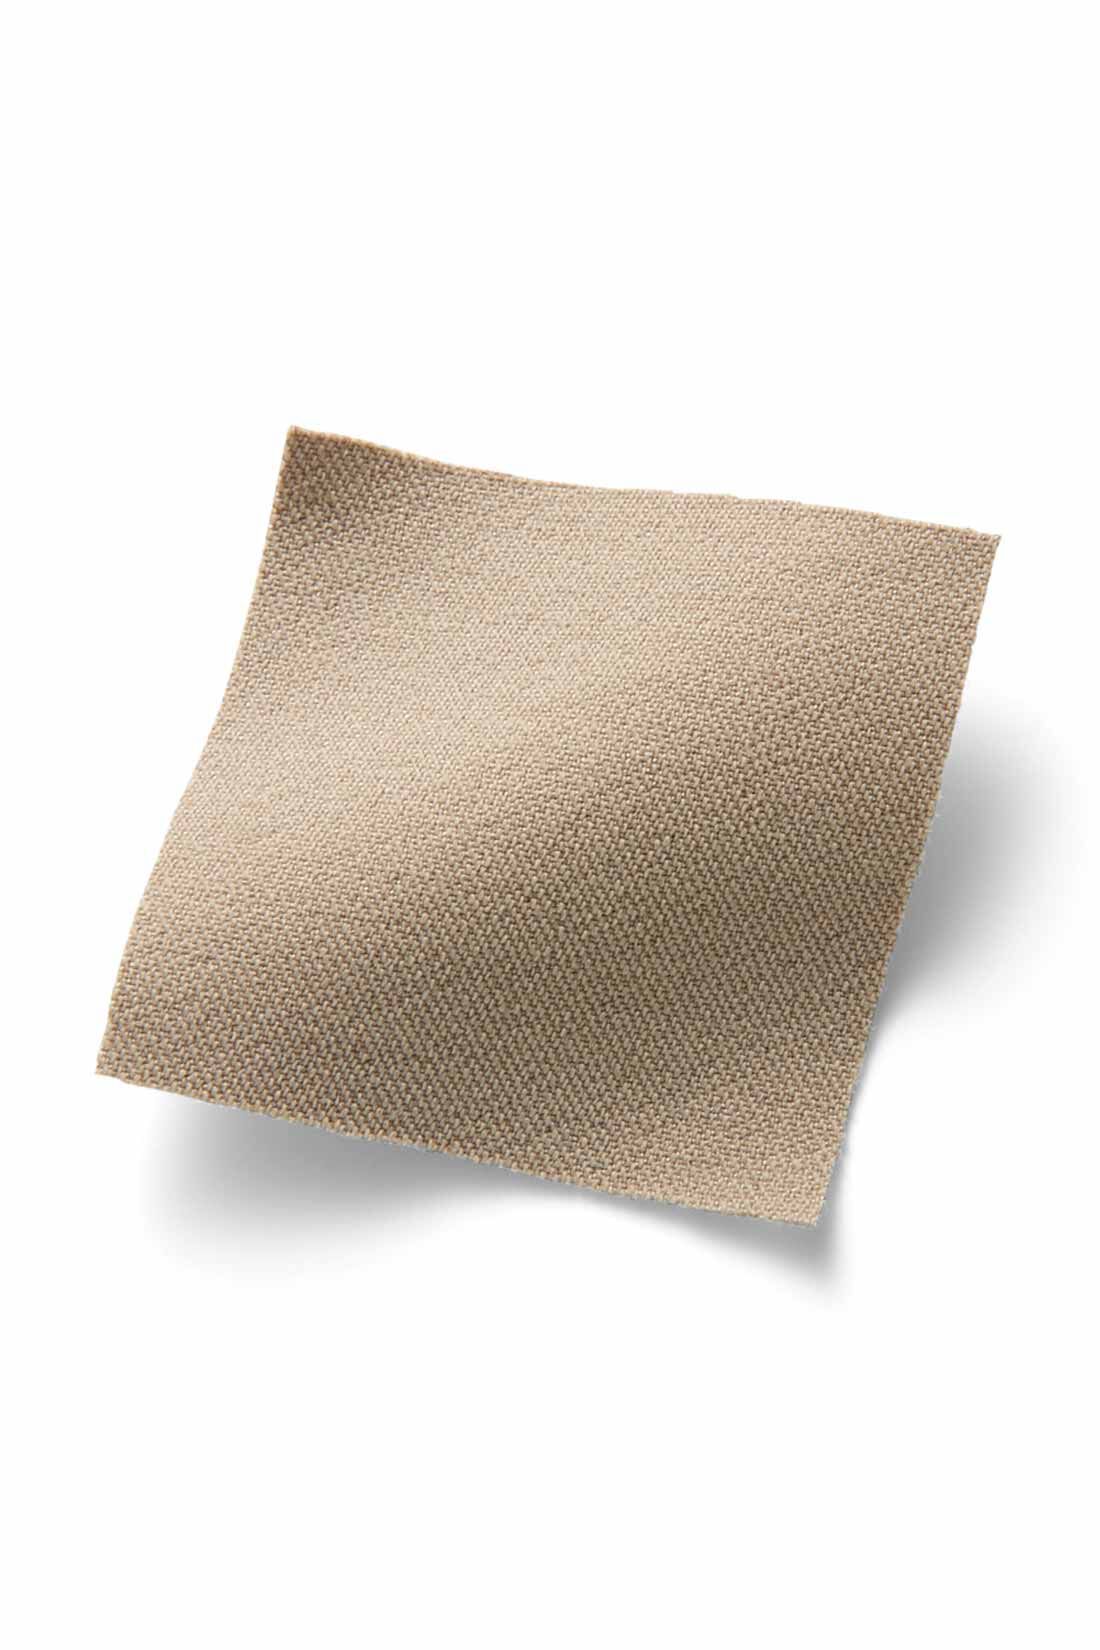 IEDIT|IEDIT[イディット]　ぐいっとしなやか すらりと美脚！ ストレッチ布はく素材のエアノビテーパードパンツ〈ネイビー〉|ストレッチ素材ながら綿のようなマットな表面感が品よくきれい。脚のラインを拾いにくい厚みと張り感で高見えします。